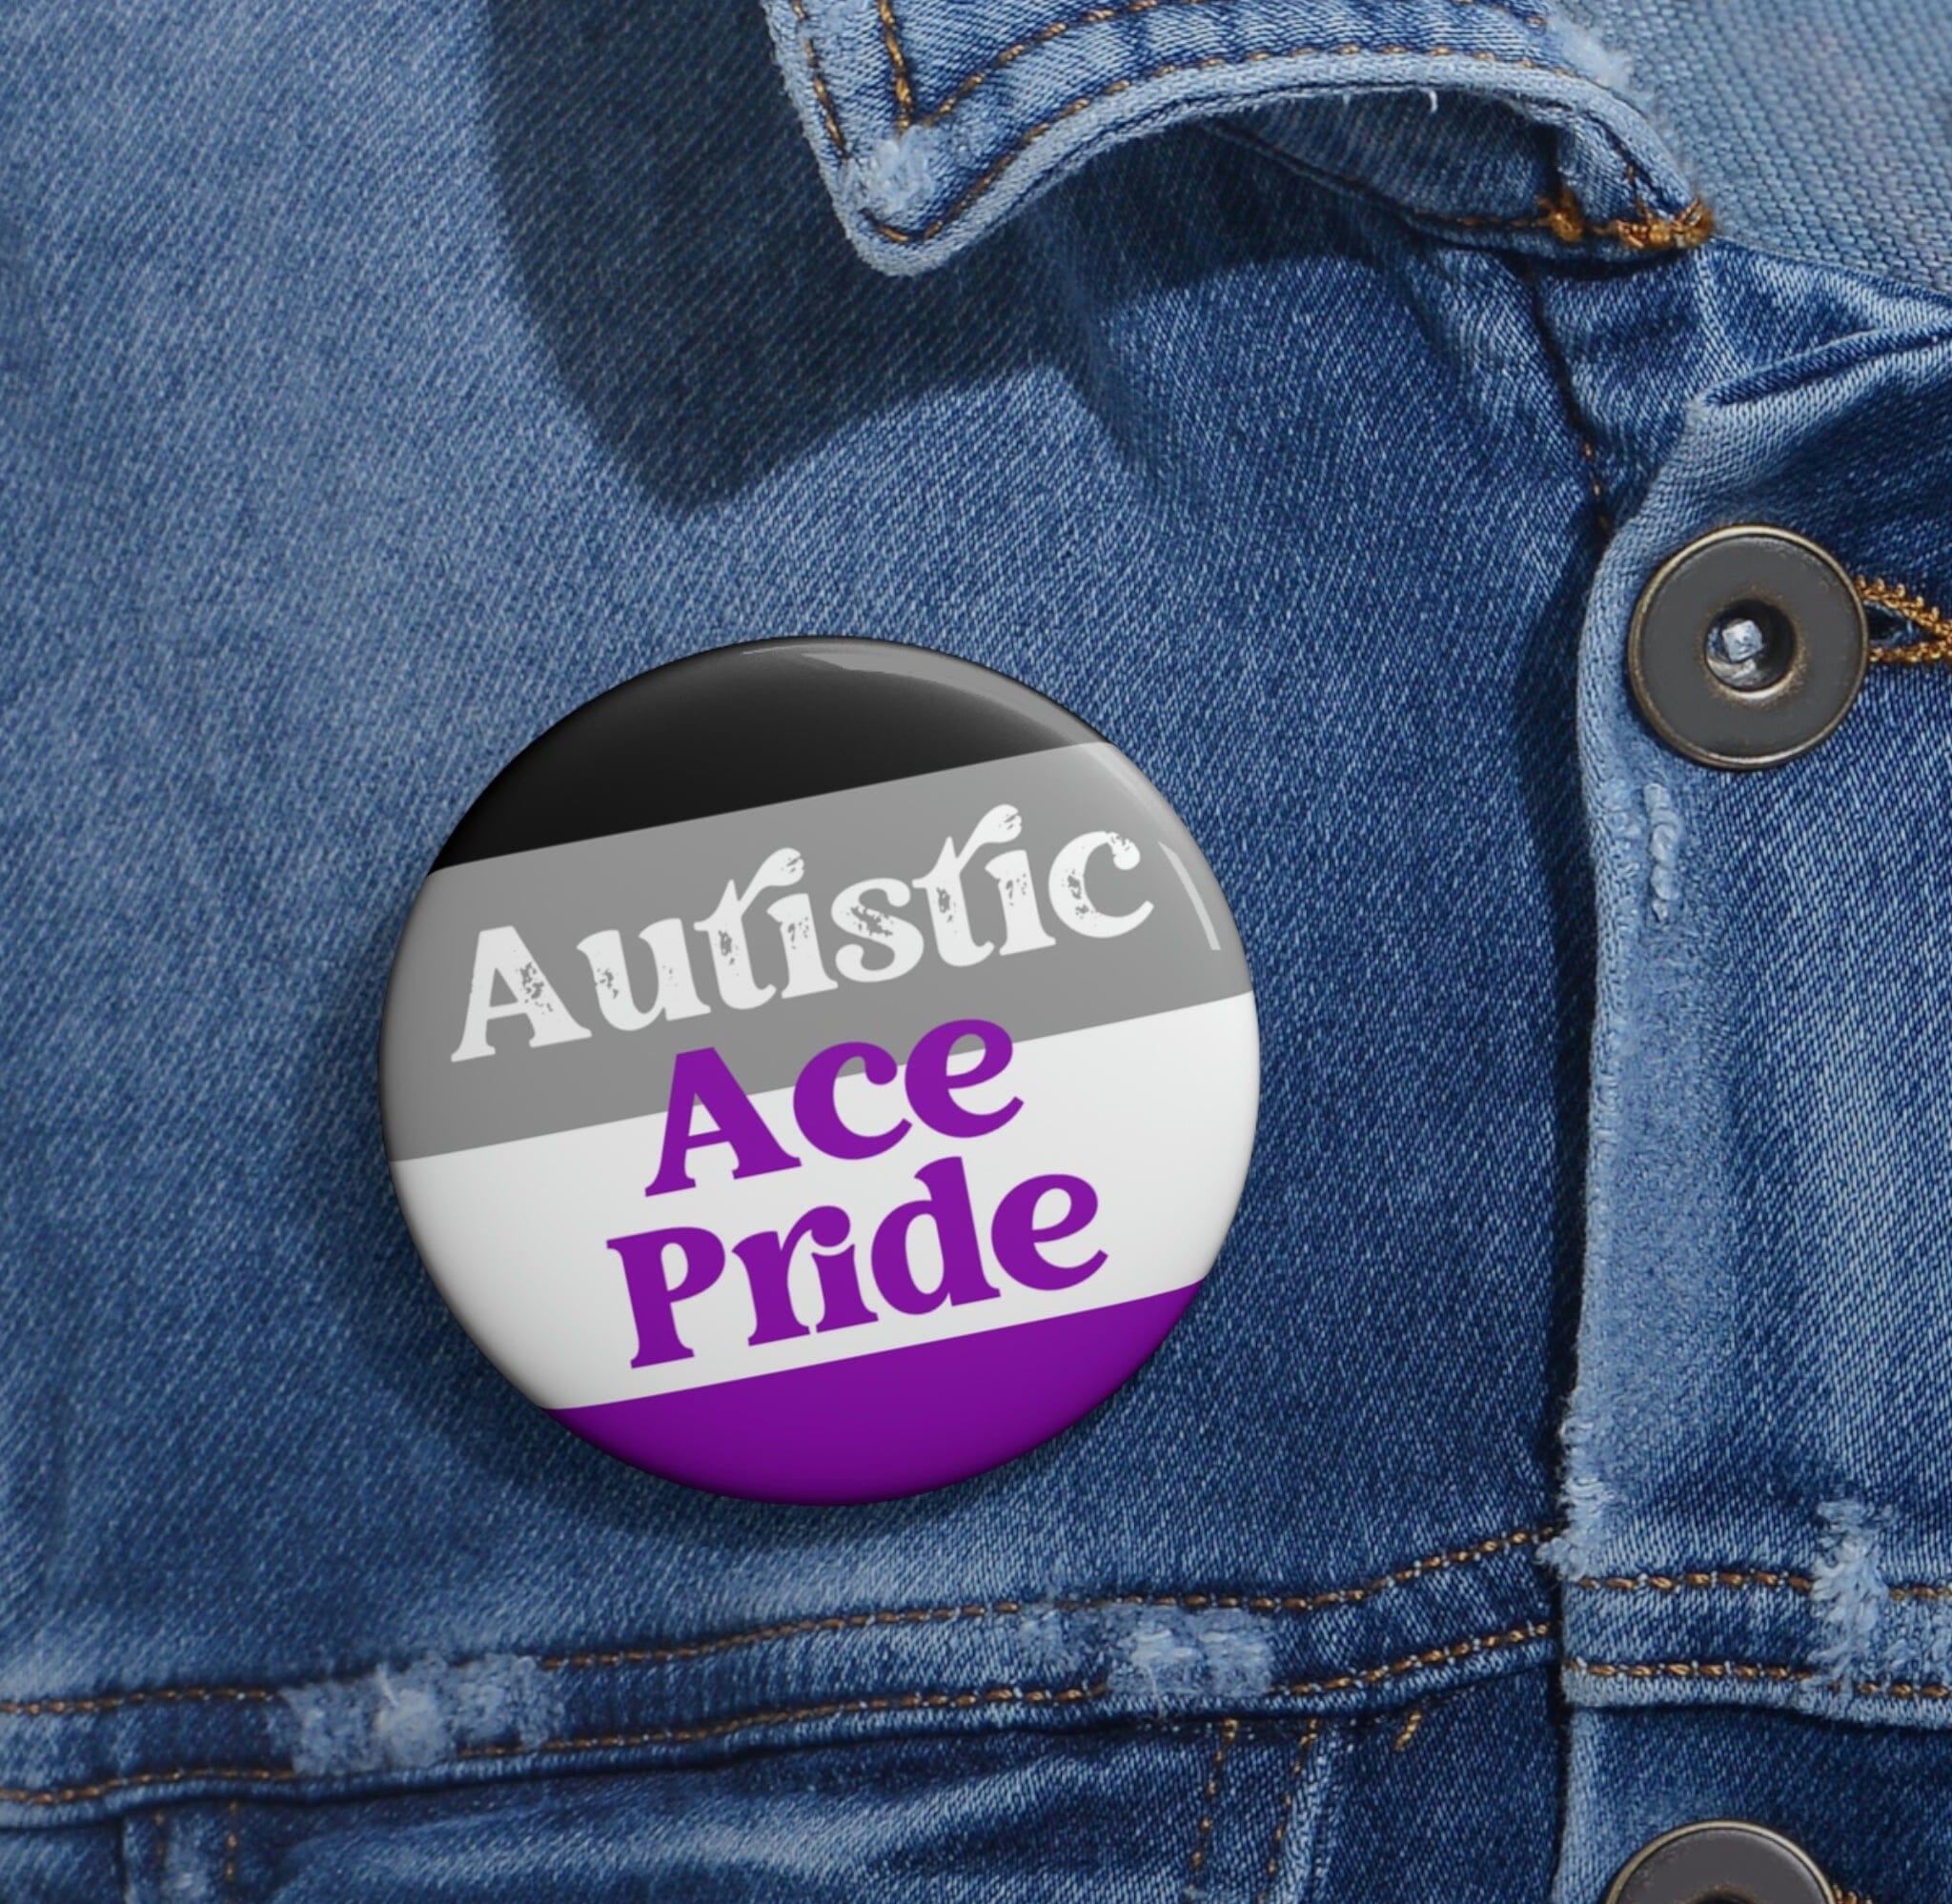 Autistic Ace Pride Pin Accessories Printify 